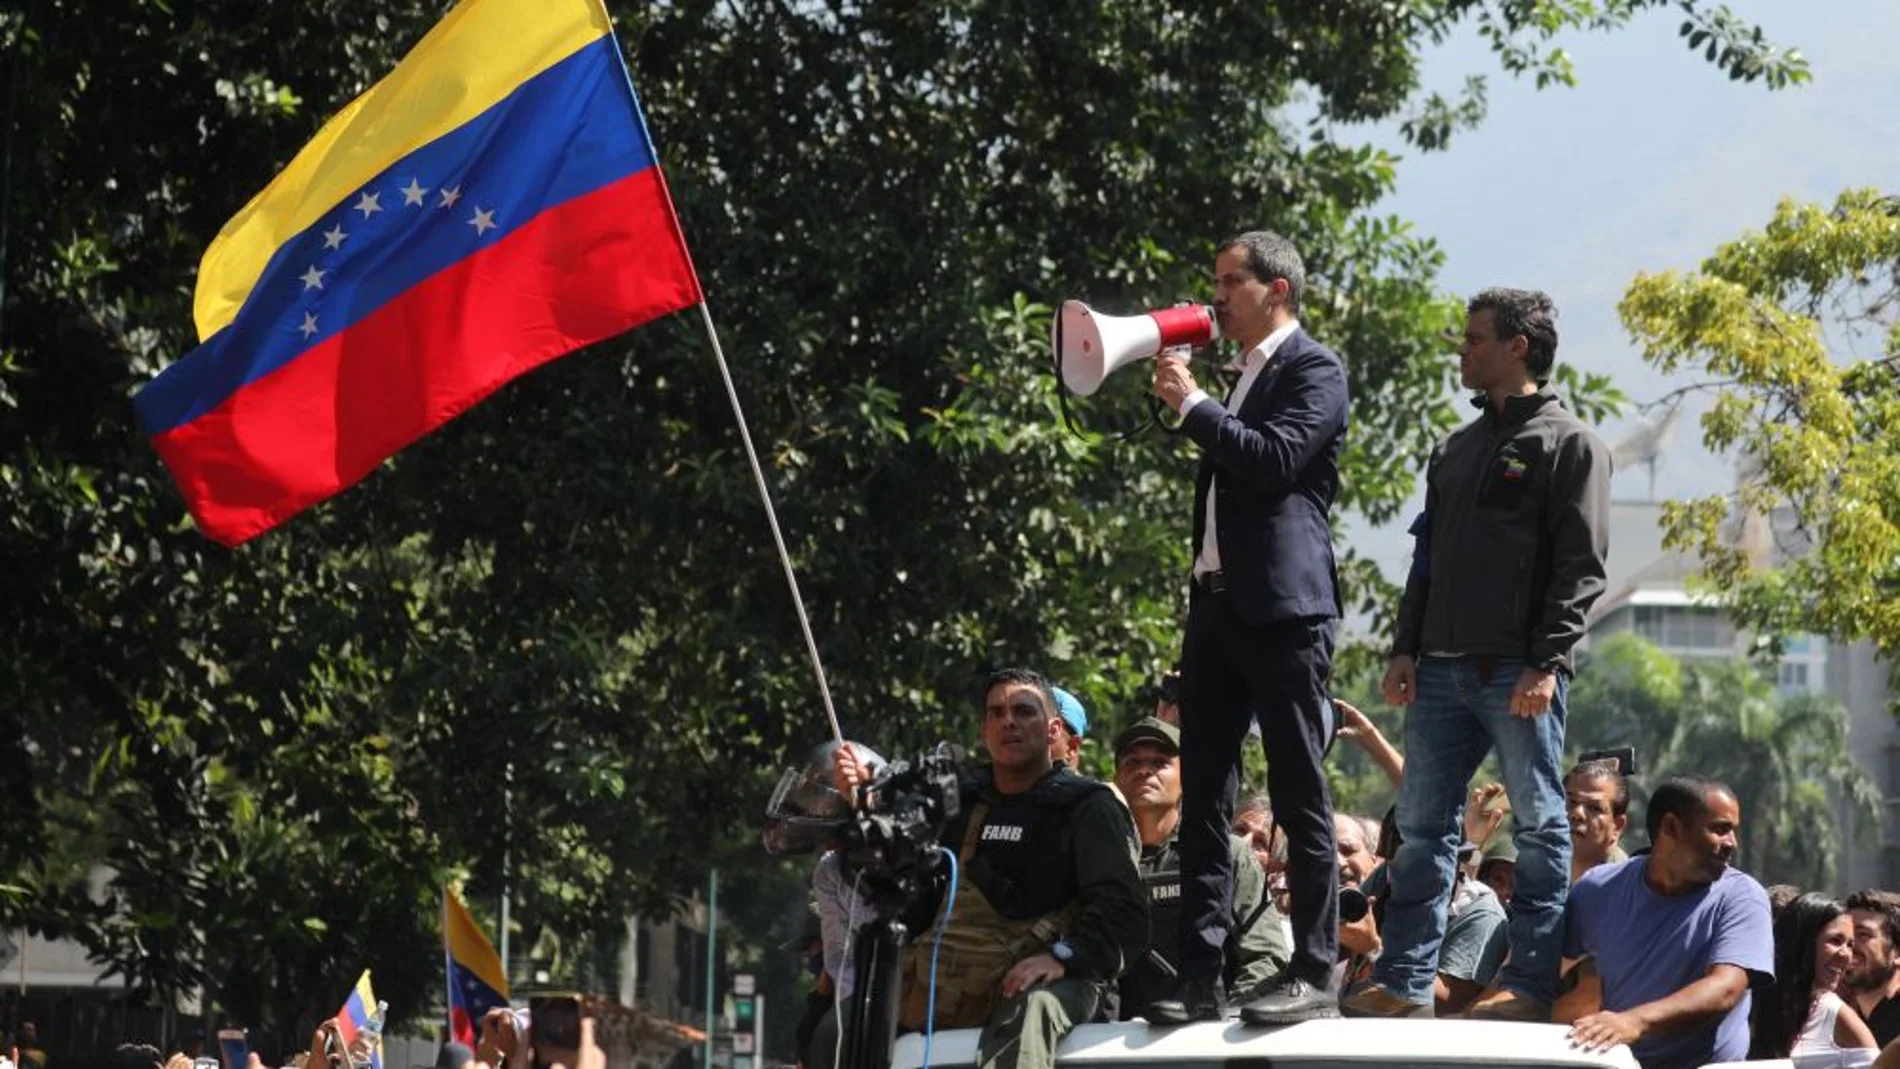 Noticias 2 Antena 3 (30-04-19)  Venezuela: Sigue adelante la 'operación libertad' con declaraciones de Guaidó y Leopoldo López